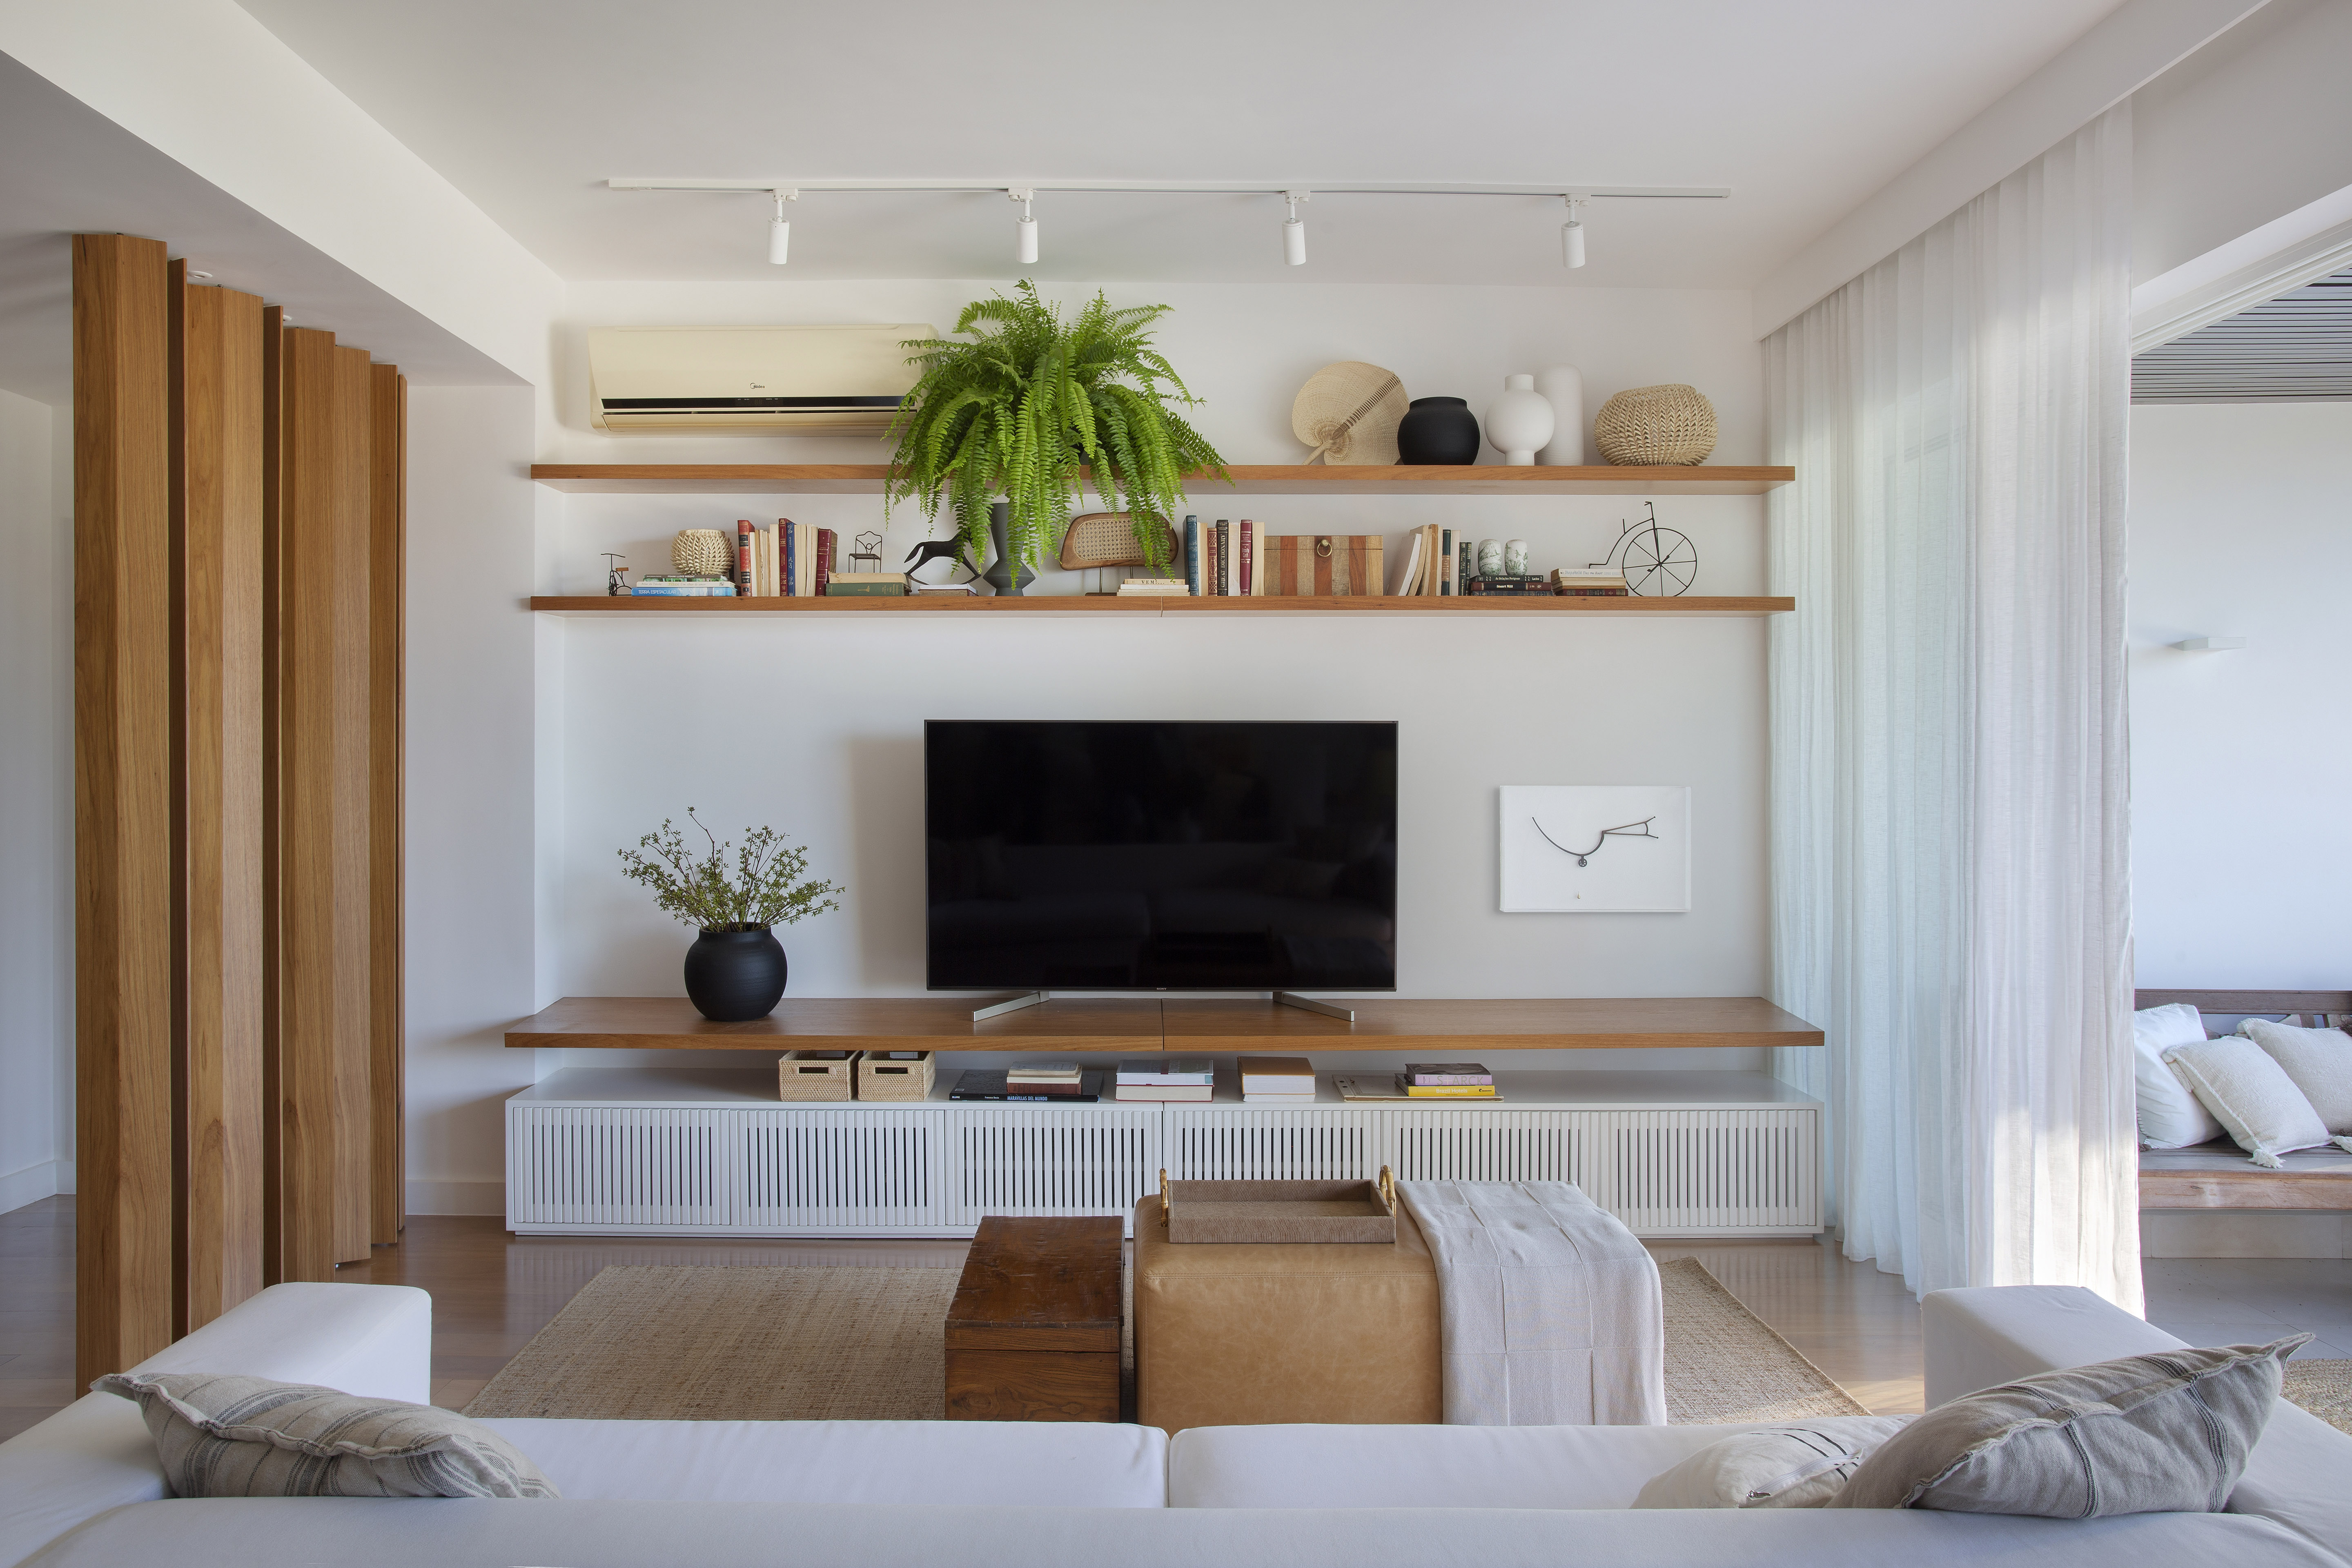 Apartamento de 200 m² possui madeira no piso, paredes e mobiliário